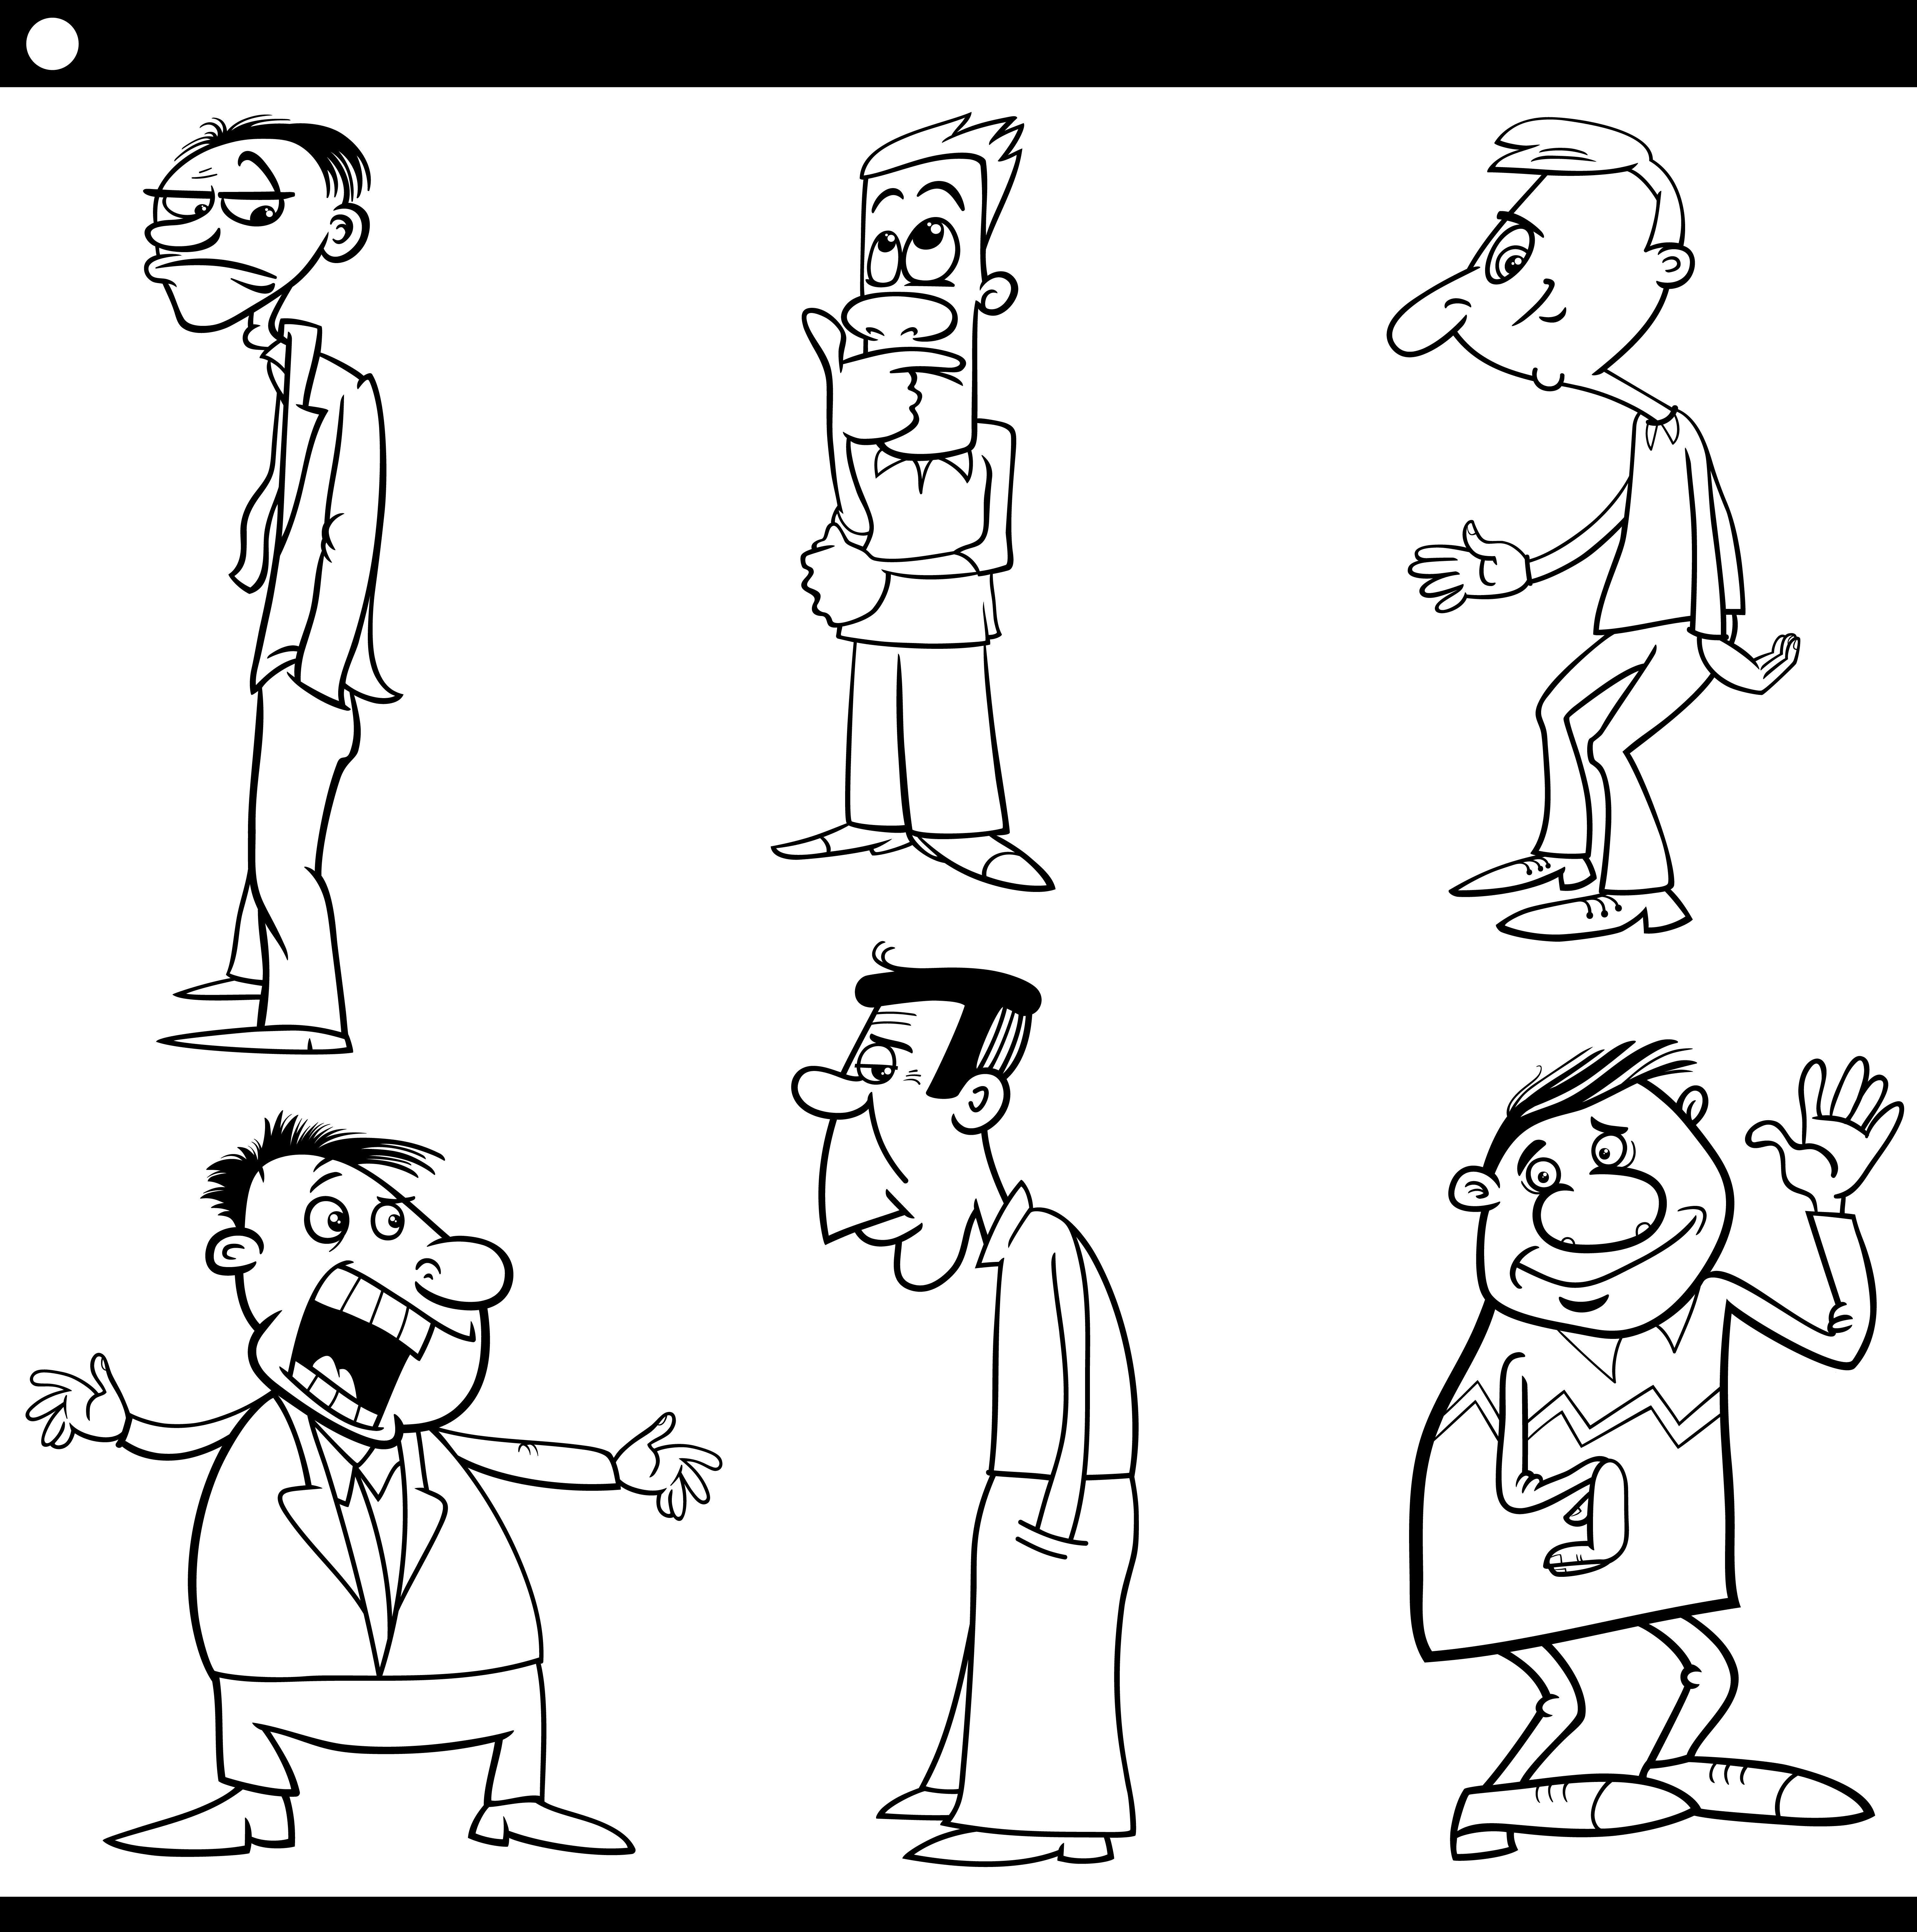 Ilustração de desenho animado em preto e branco de encontrar as